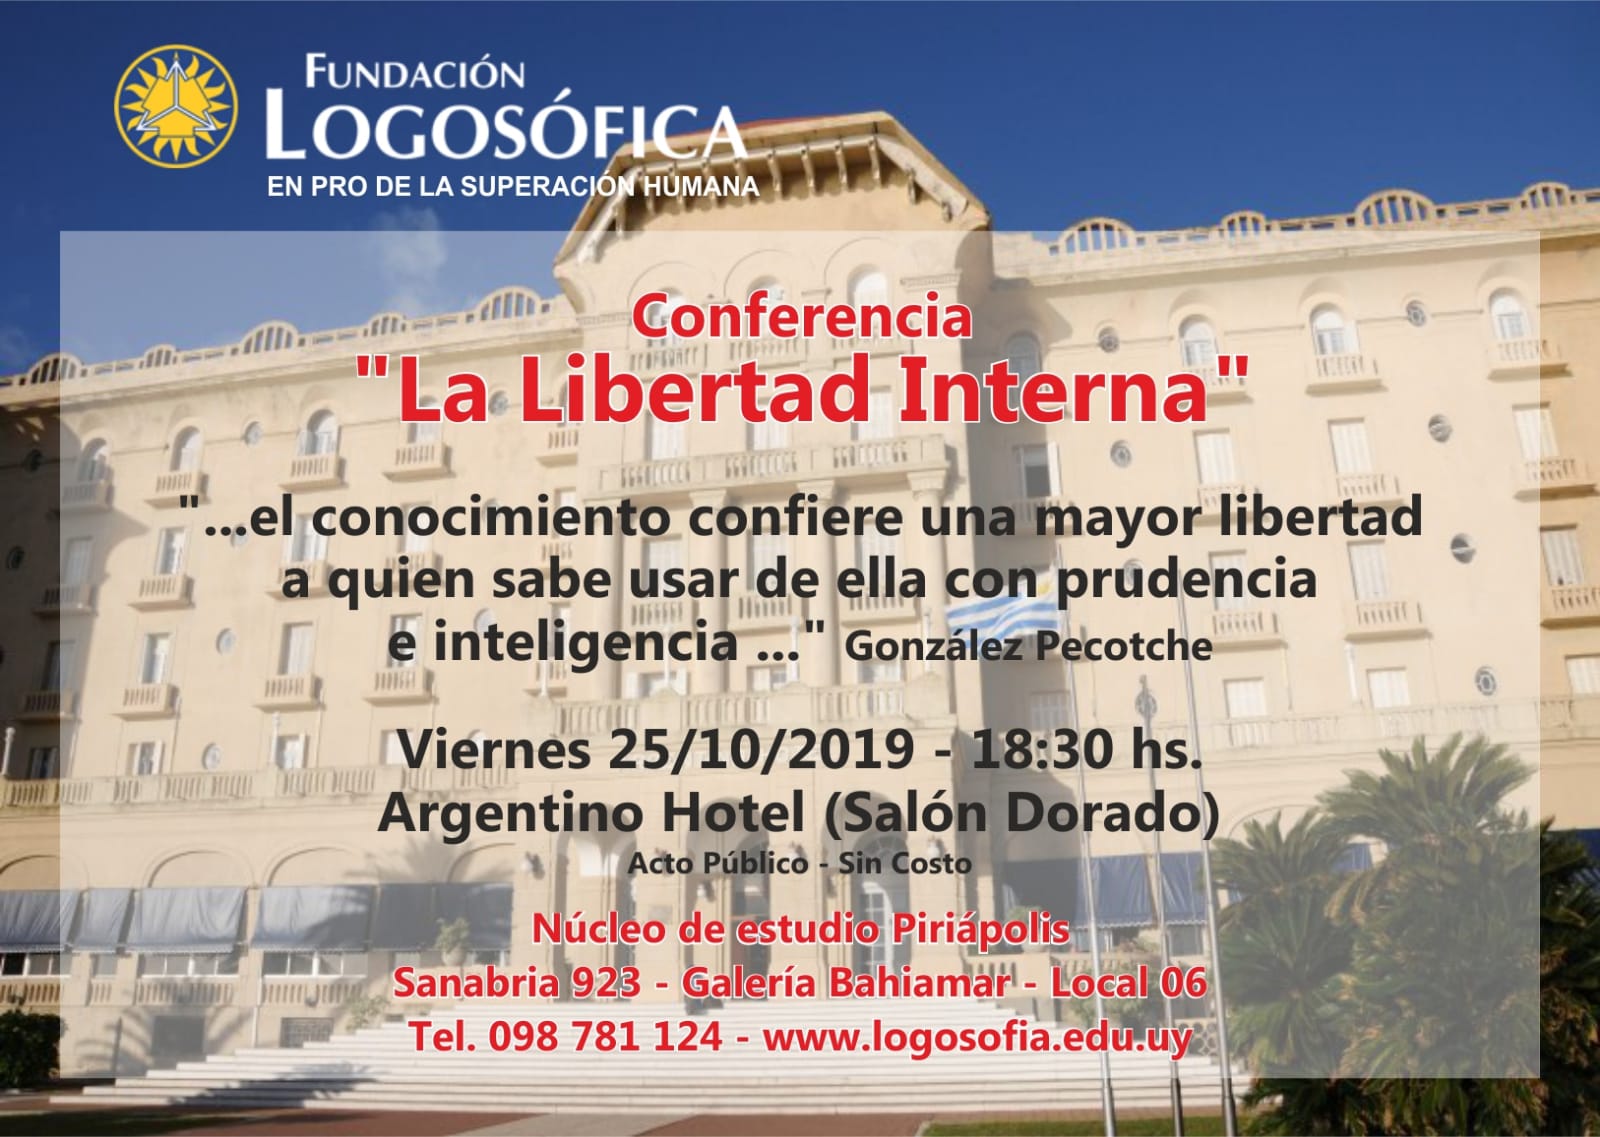 Hotel Argentino Conferencia Logosofia